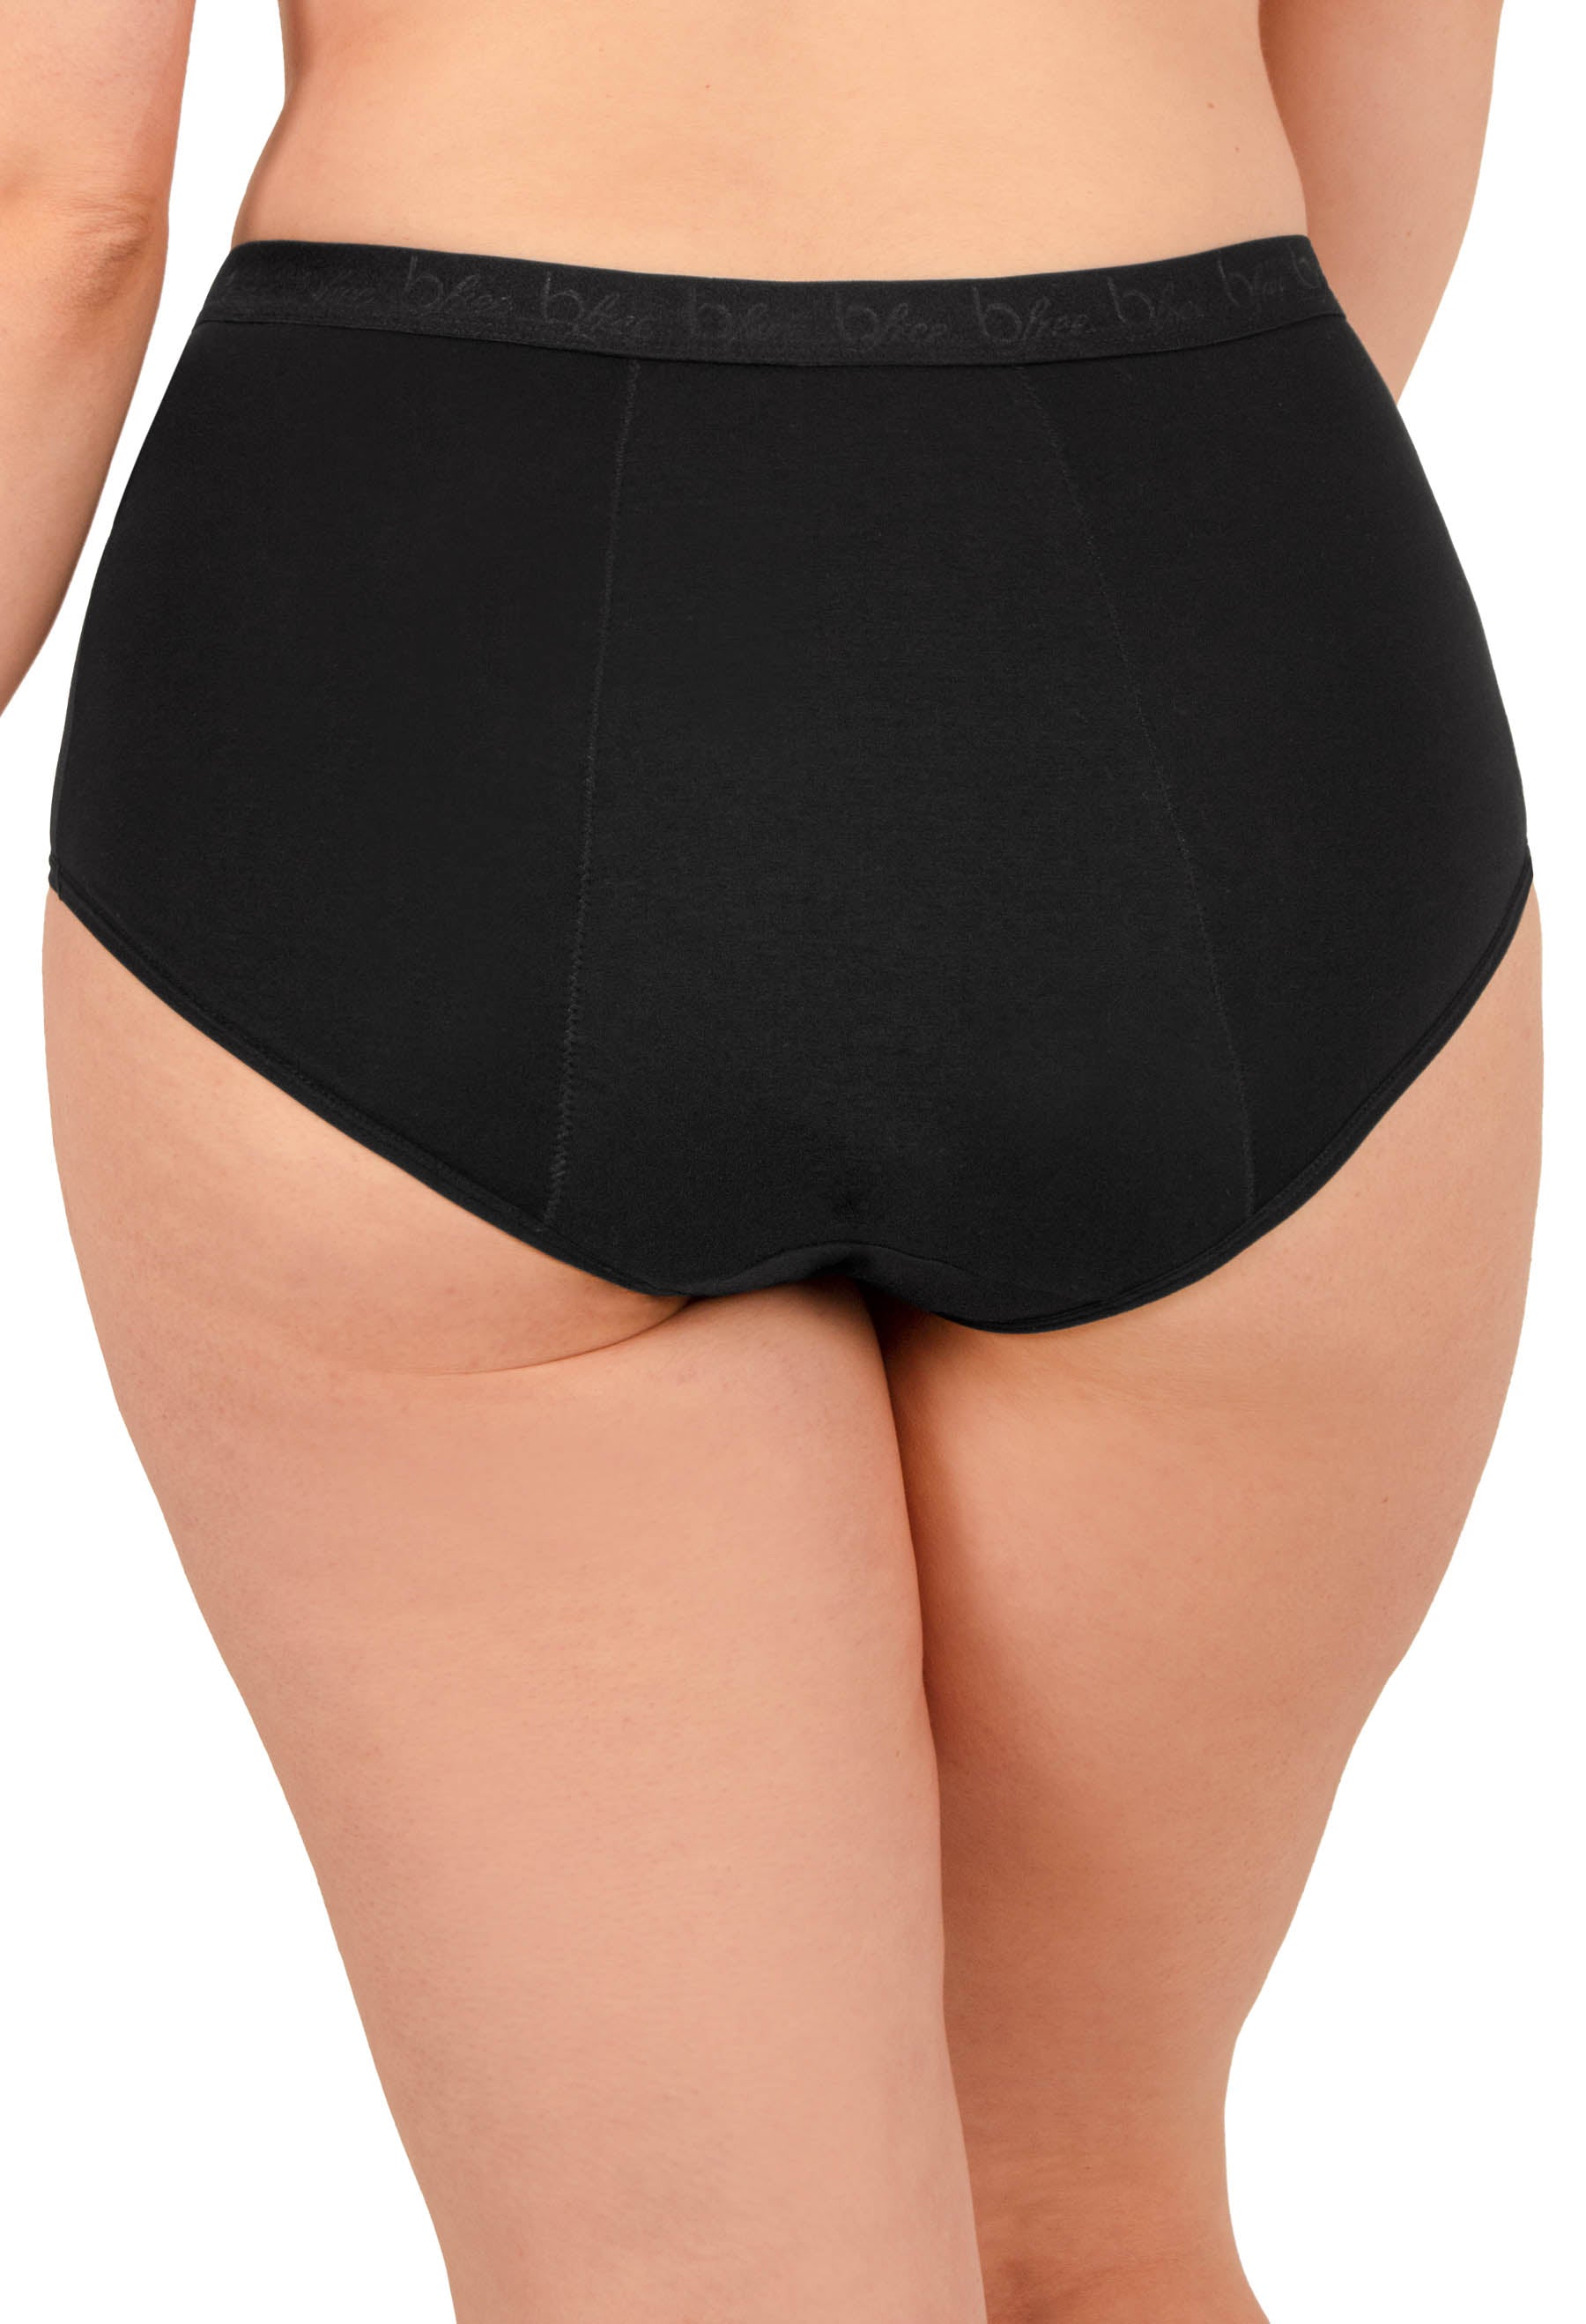 Battewa High Waist Bladder Leak Proof Underwear for Women Washable